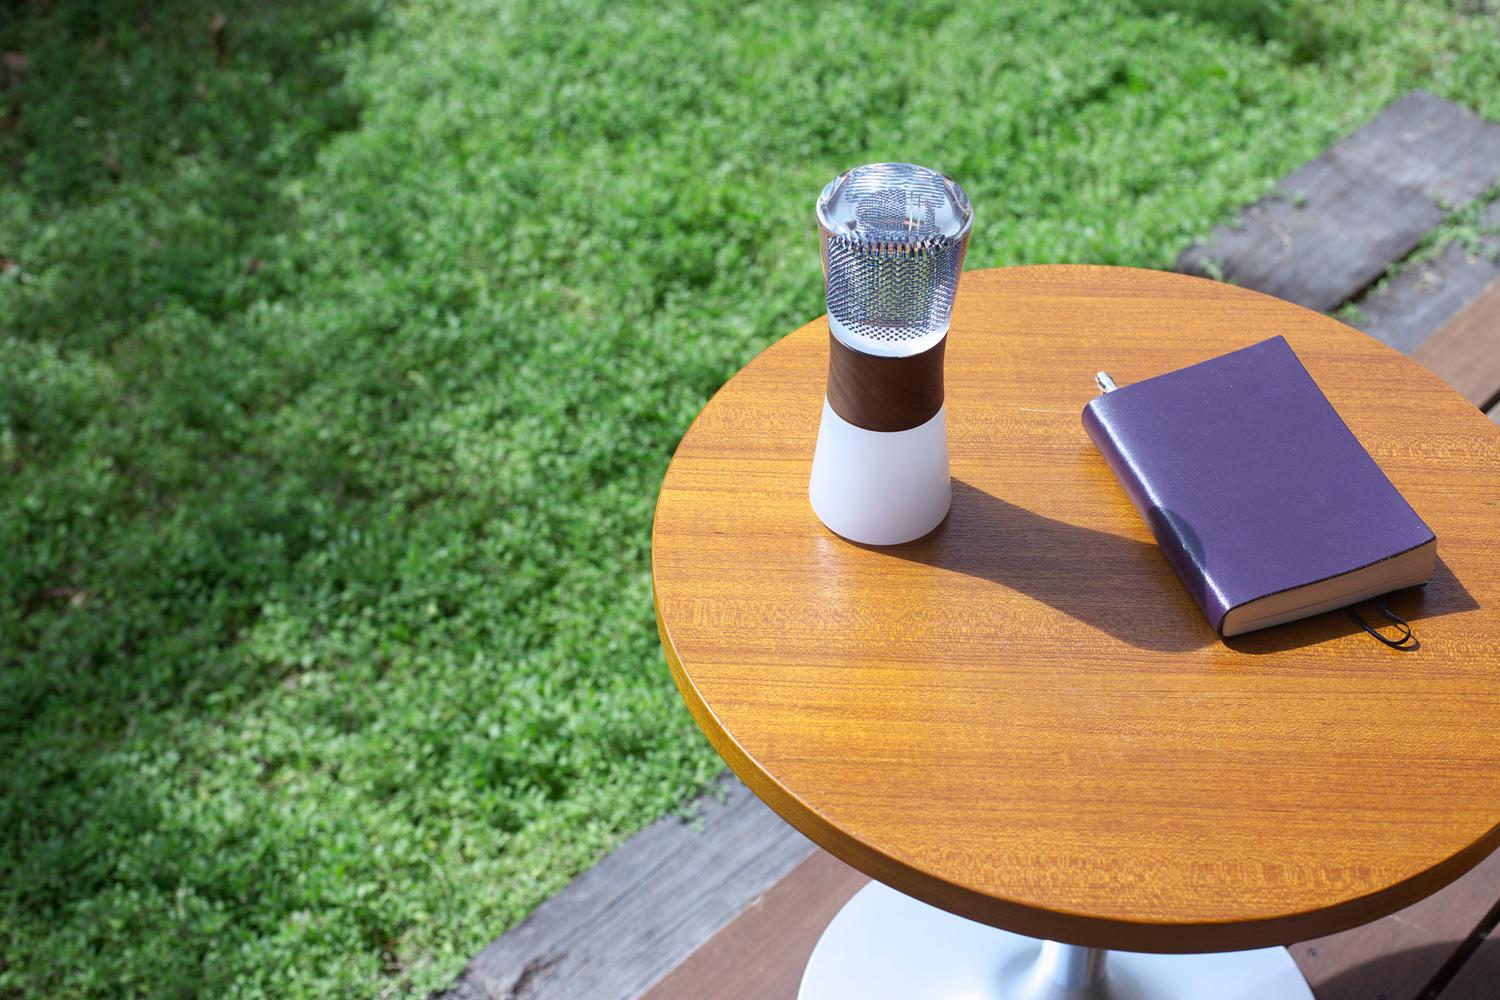 芝生のあるテラスでウッド調の丸テーブル上に紫の表紙の本と置かれたスフェラーランタンの写真